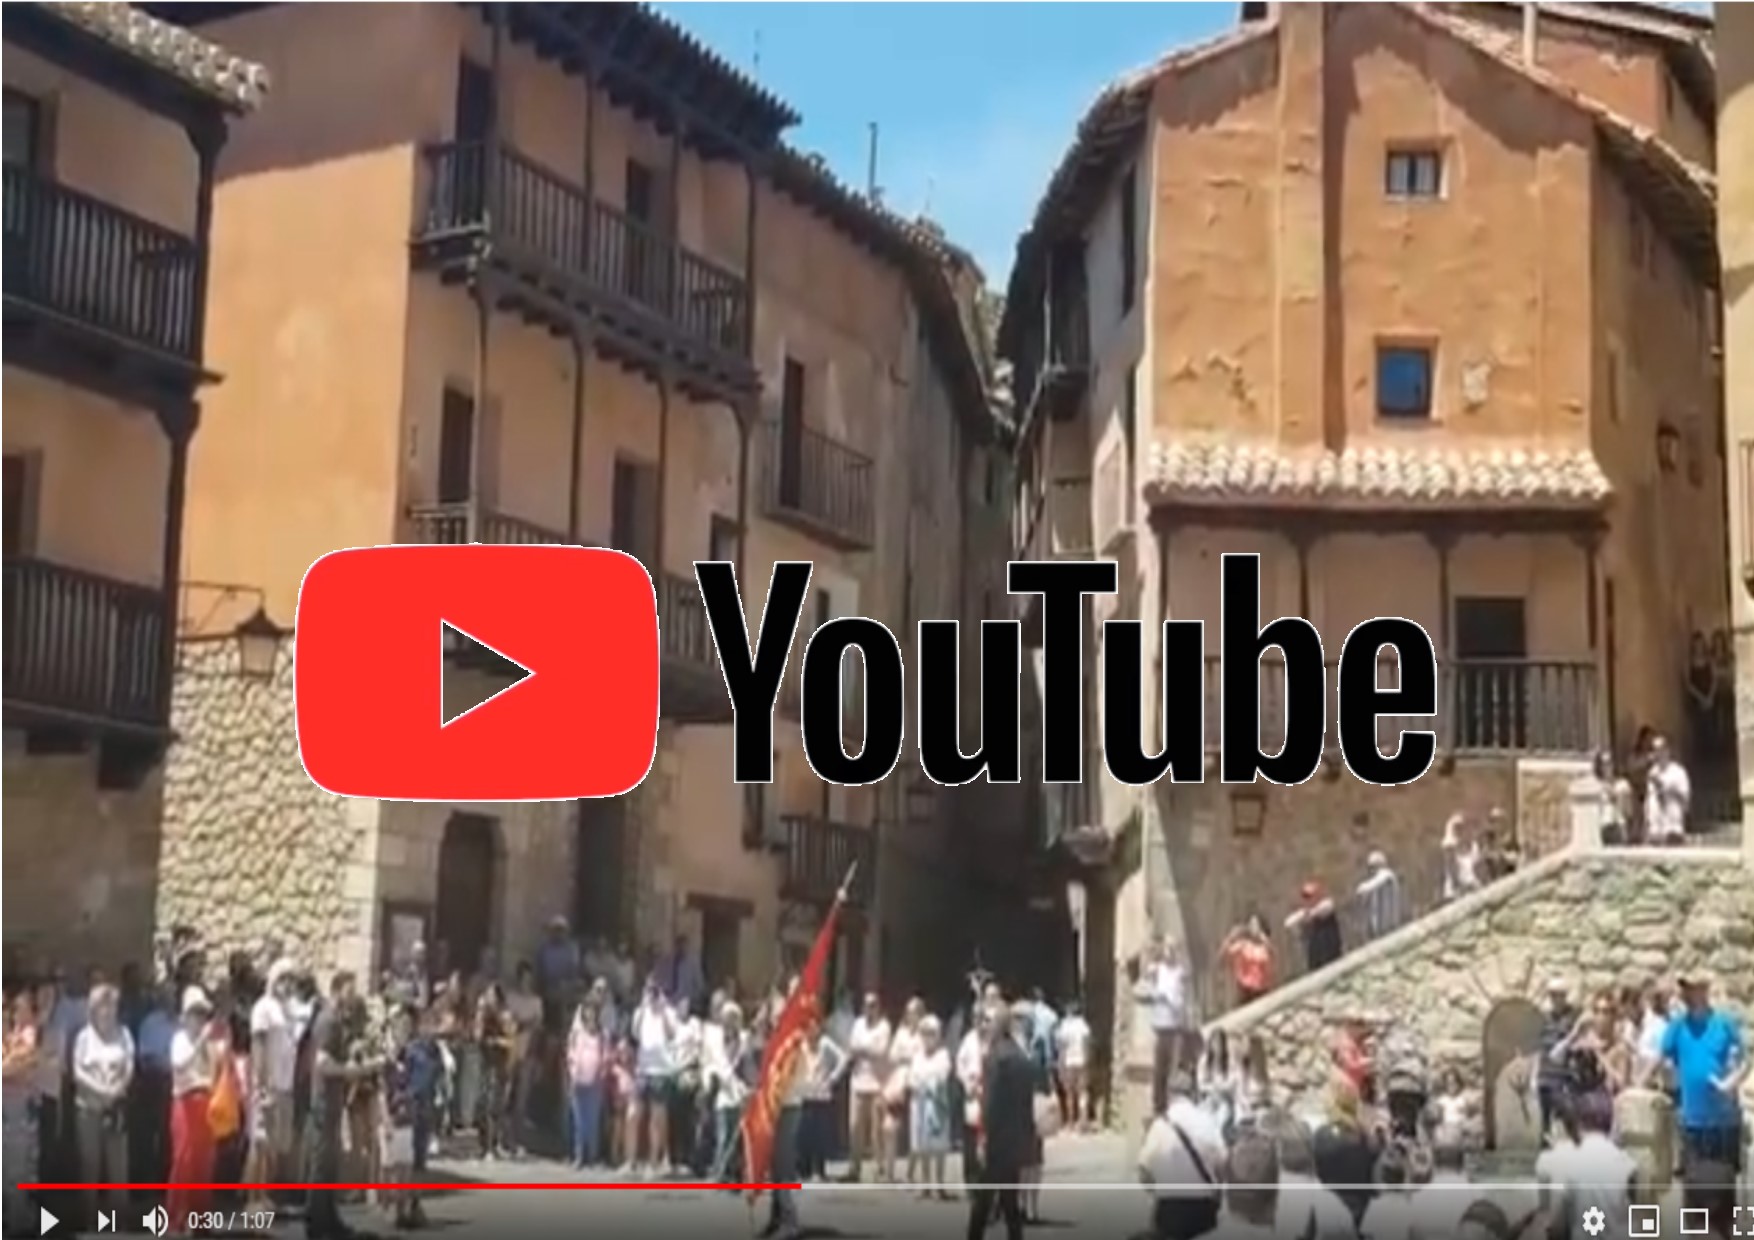 #DíaDelCorpus en #Albarracin con #BandaMusical de #Albarracín…#Enhorabuena!!